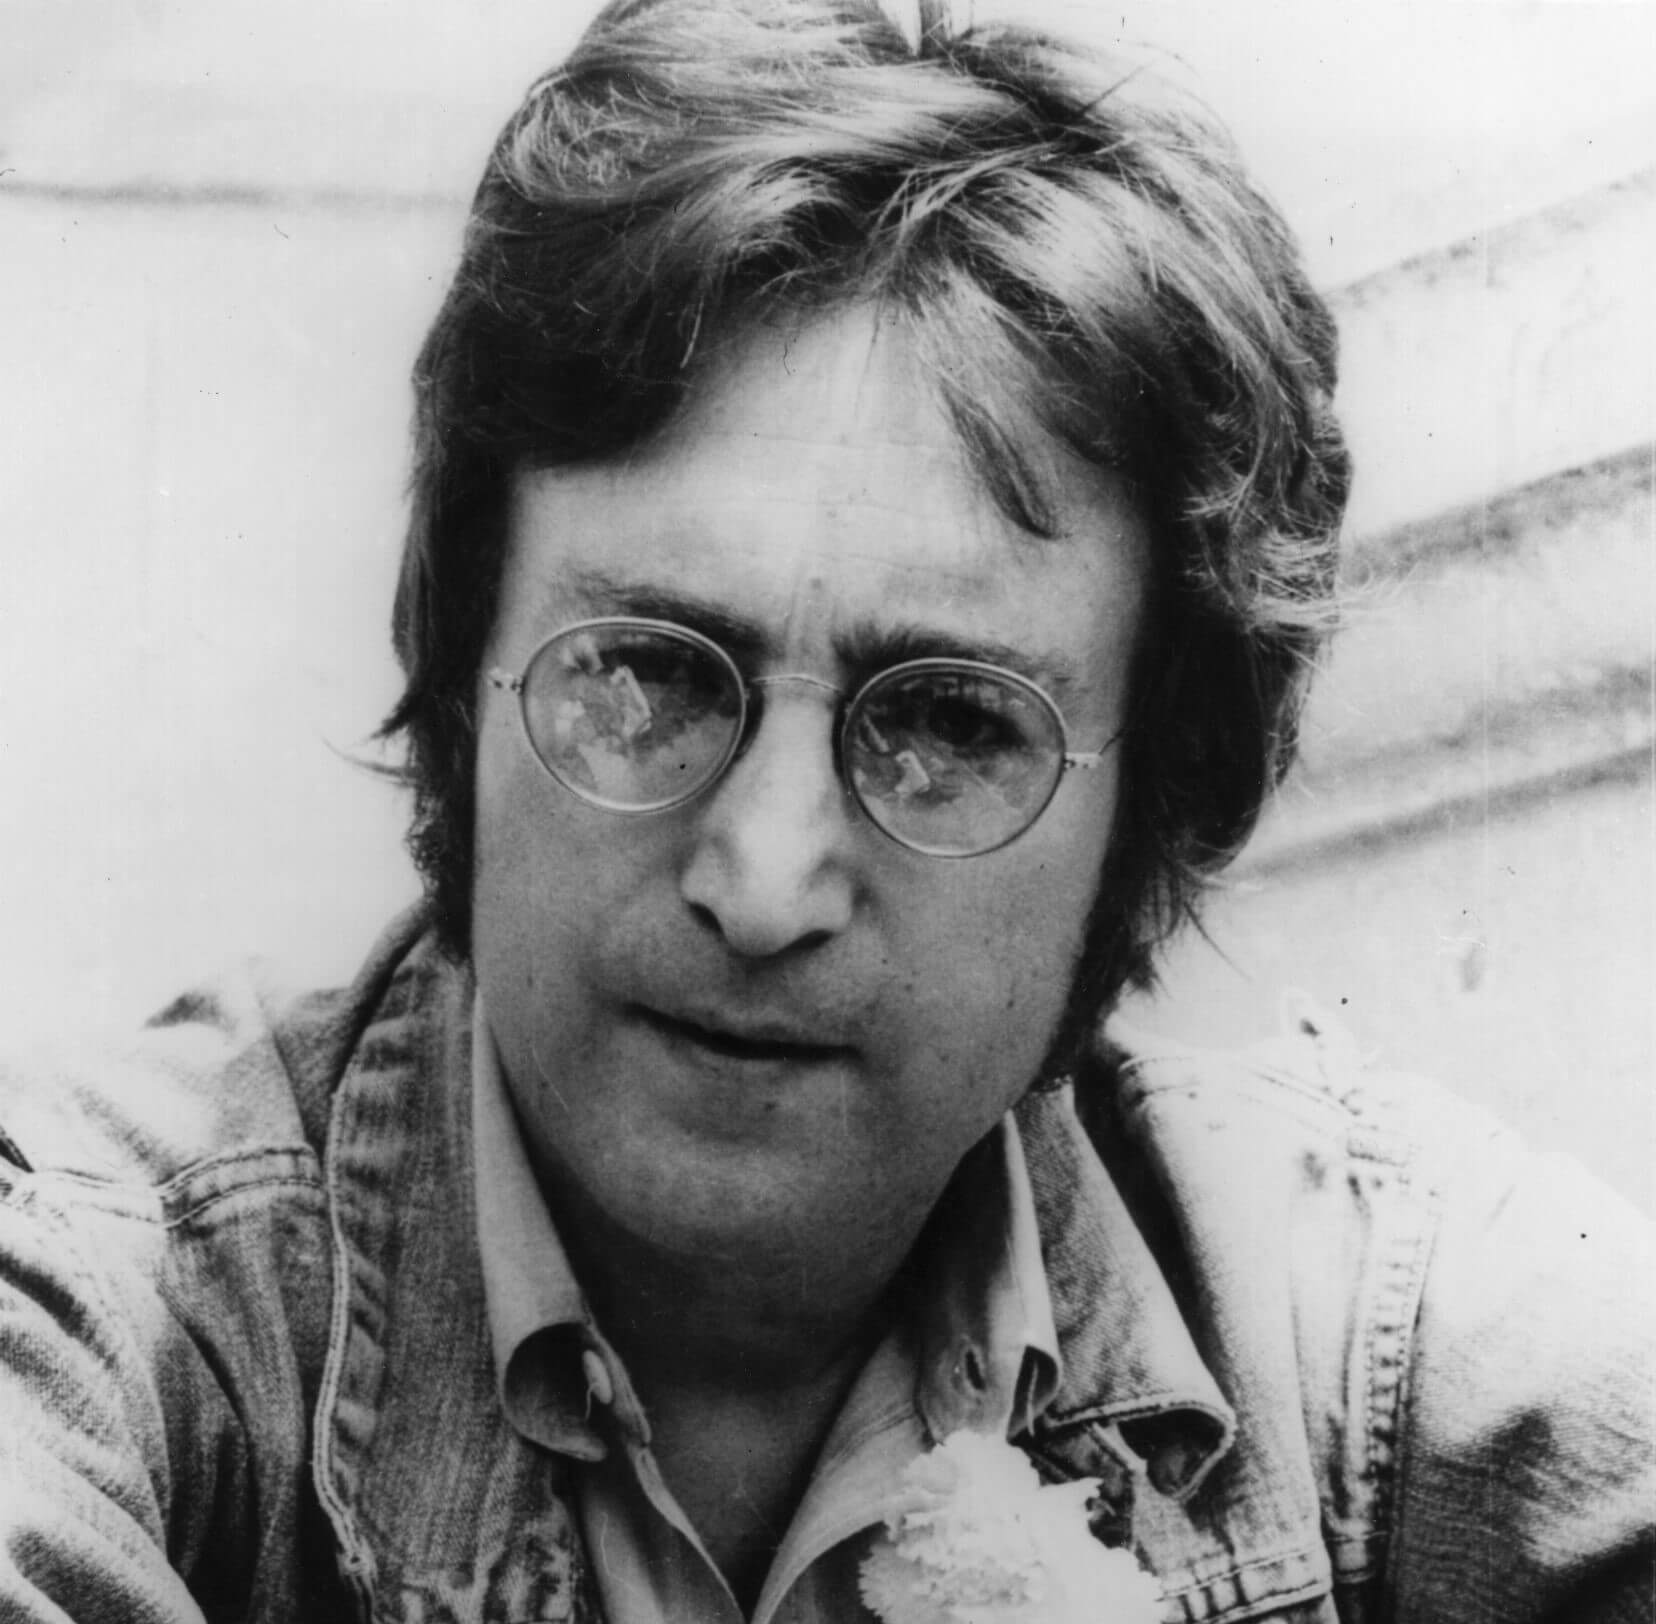 John Lennon wearing his signature glasses